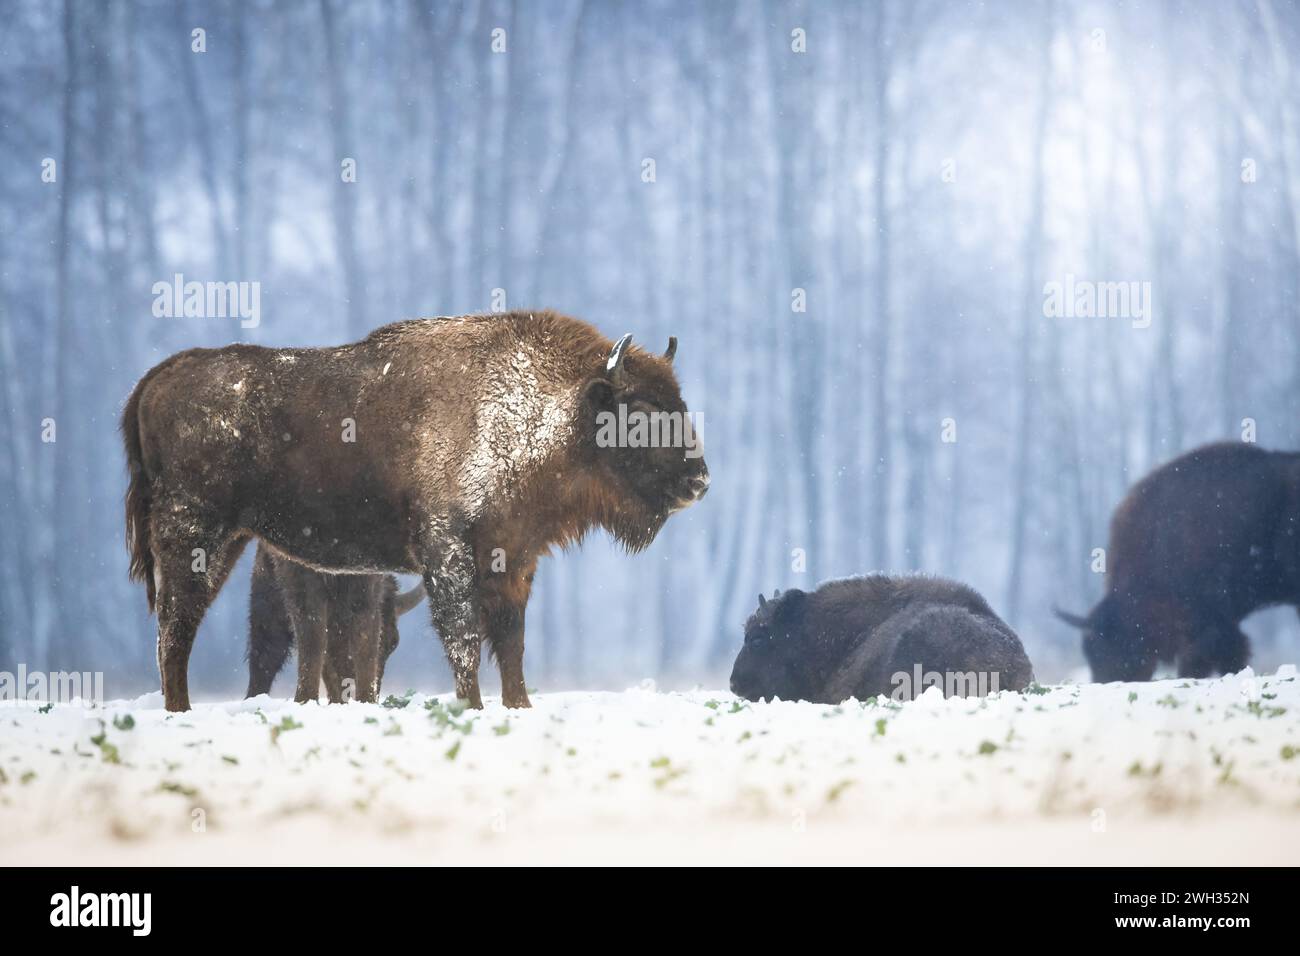 Mammifères nature sauvage bison européen Bison bonasus Wise debout sur le champ enneigé d'hiver partie nord-est de la Pologne, Europe forêt Knyszynska Banque D'Images